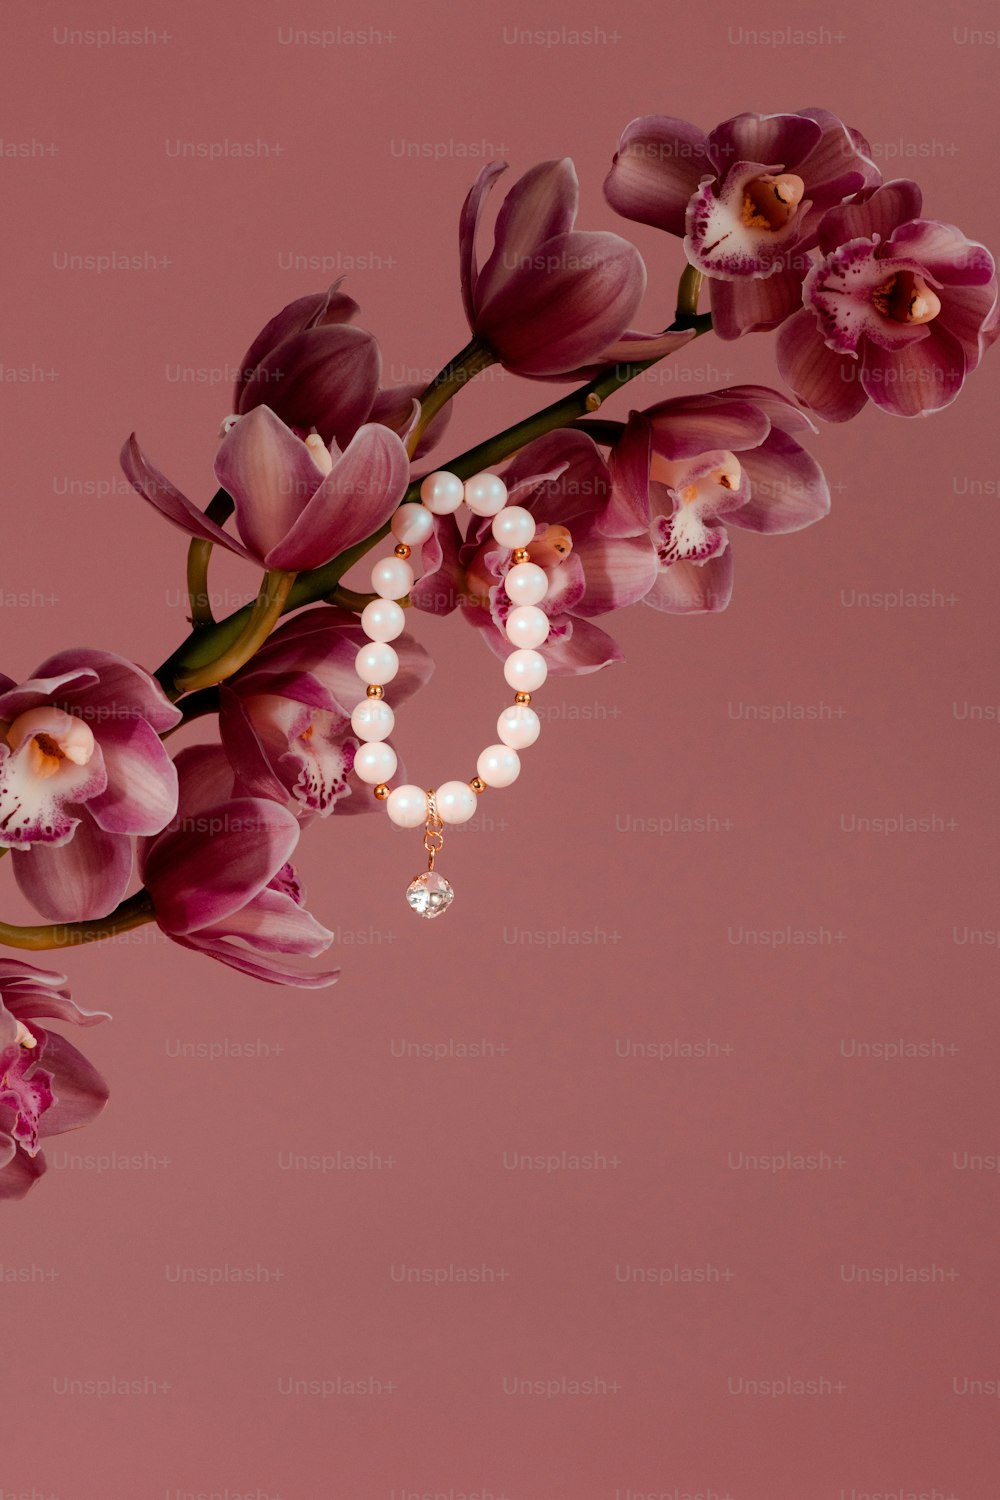 Un ramo de flores con perlas sobre fondo rosa